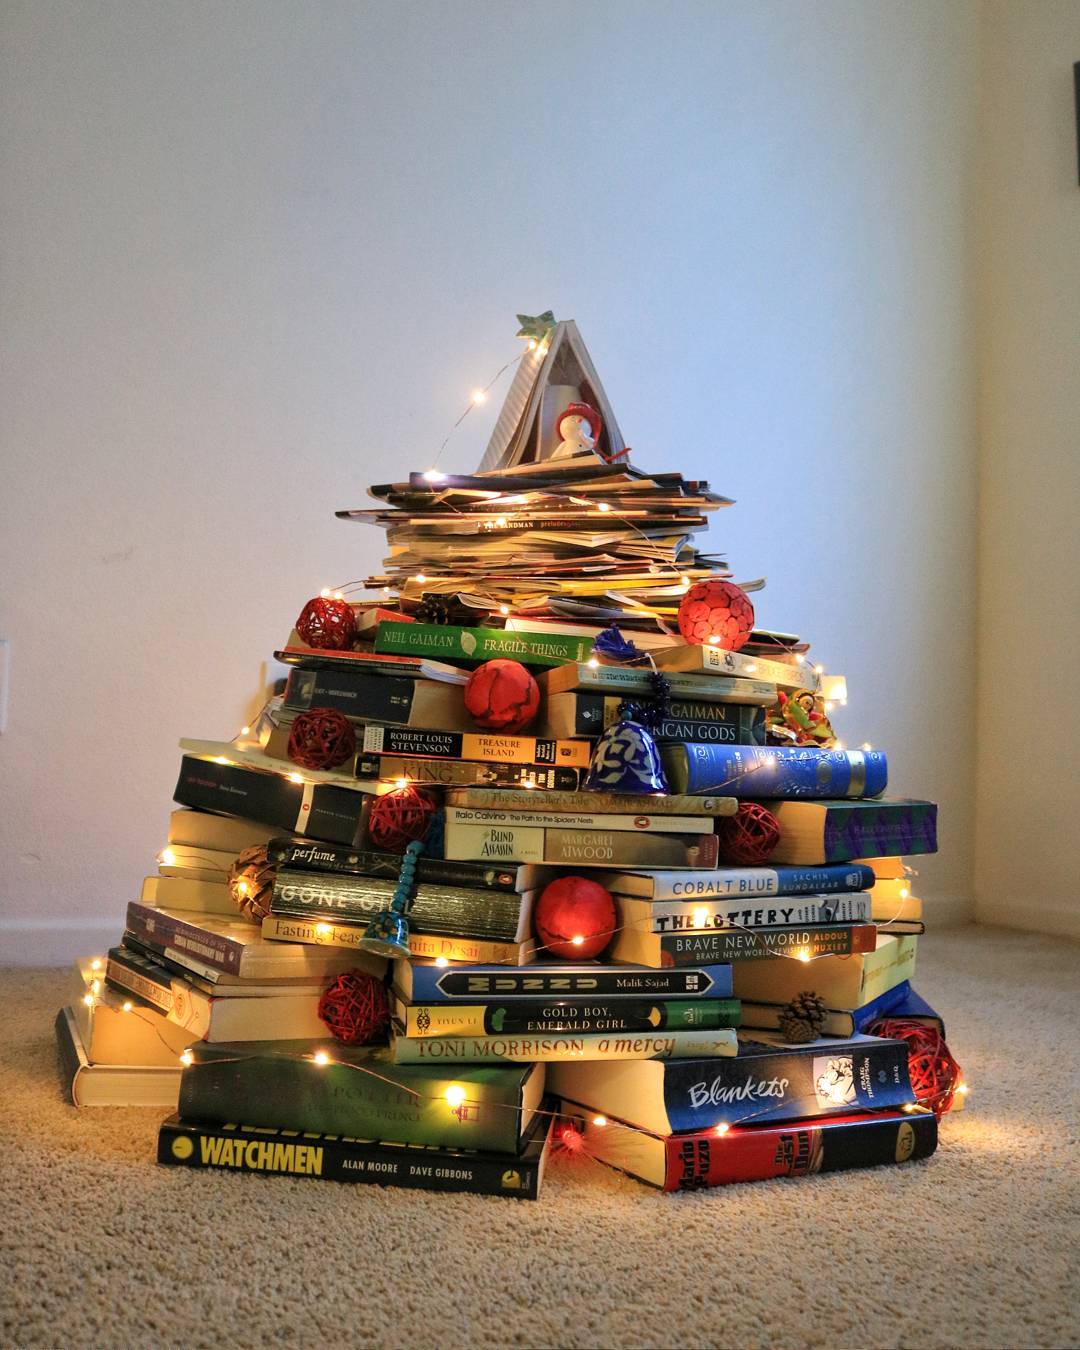 Book Christmas Tree for the holiday season!